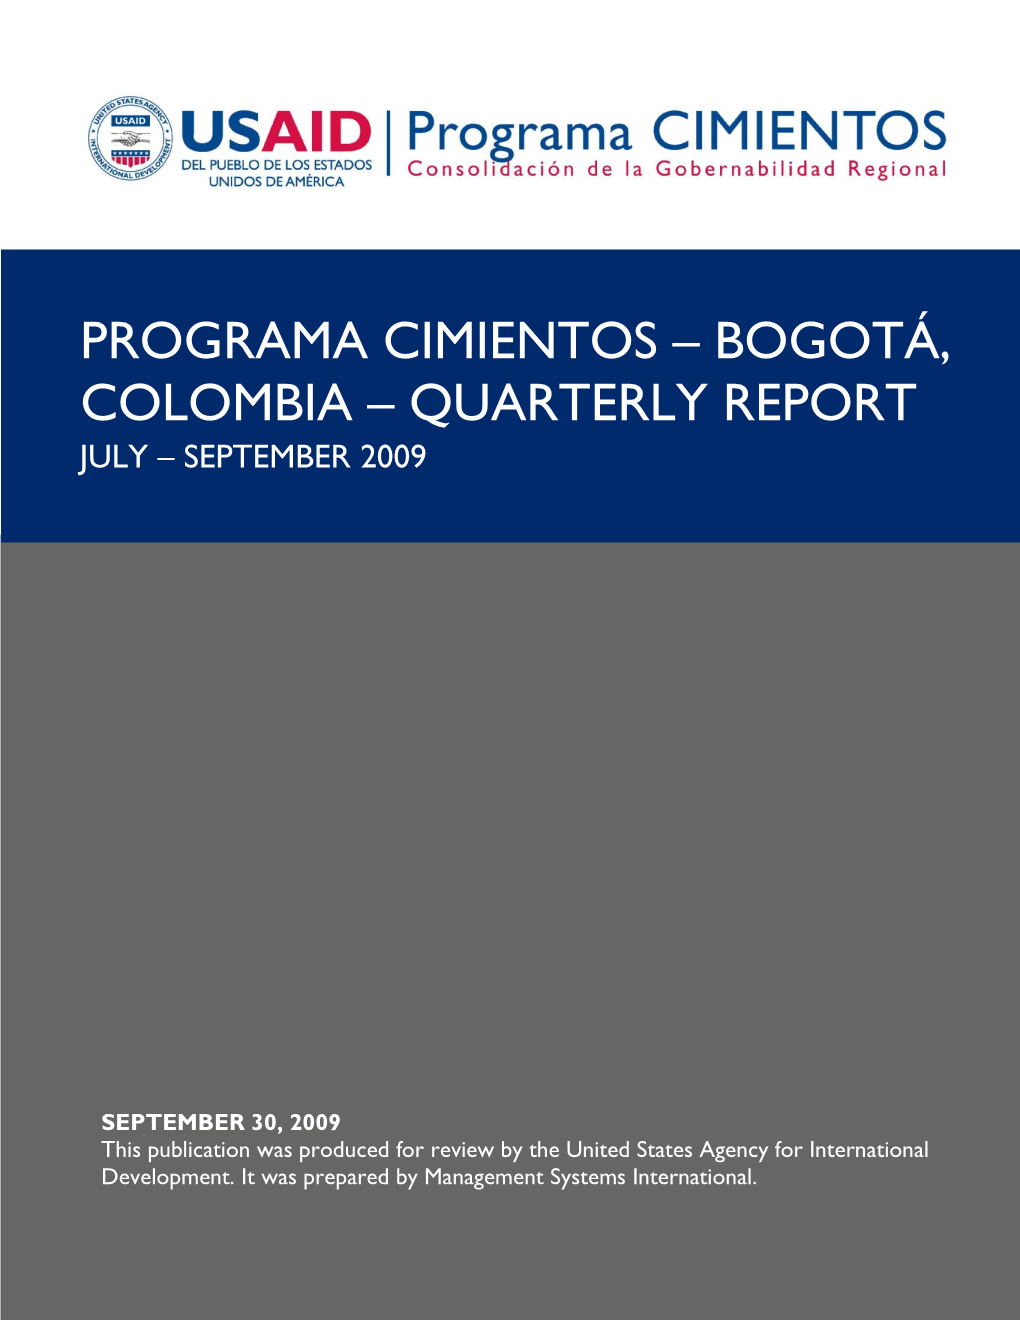 Bogotá, Colombia – Quarterly Report July – September 2009